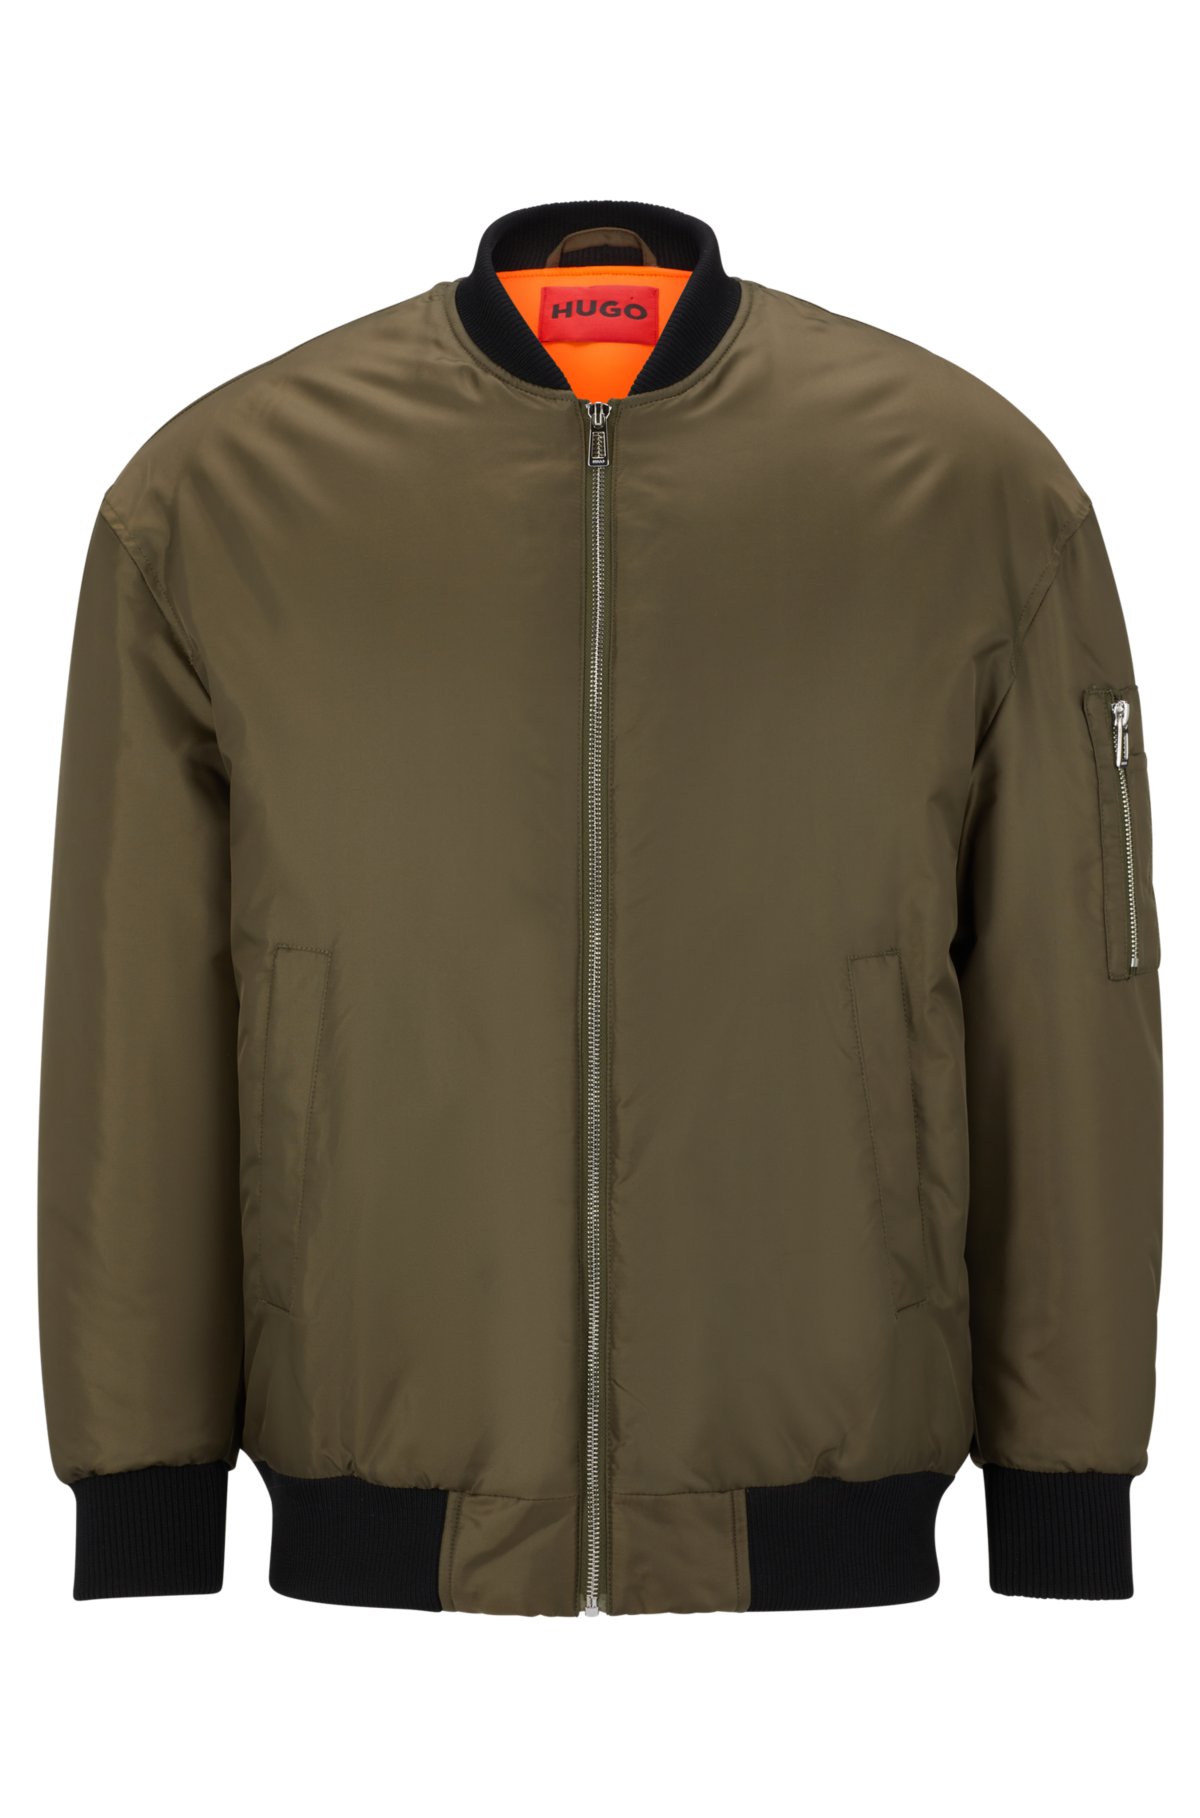 HUGO bomber jacket with zipped sleeve pocket